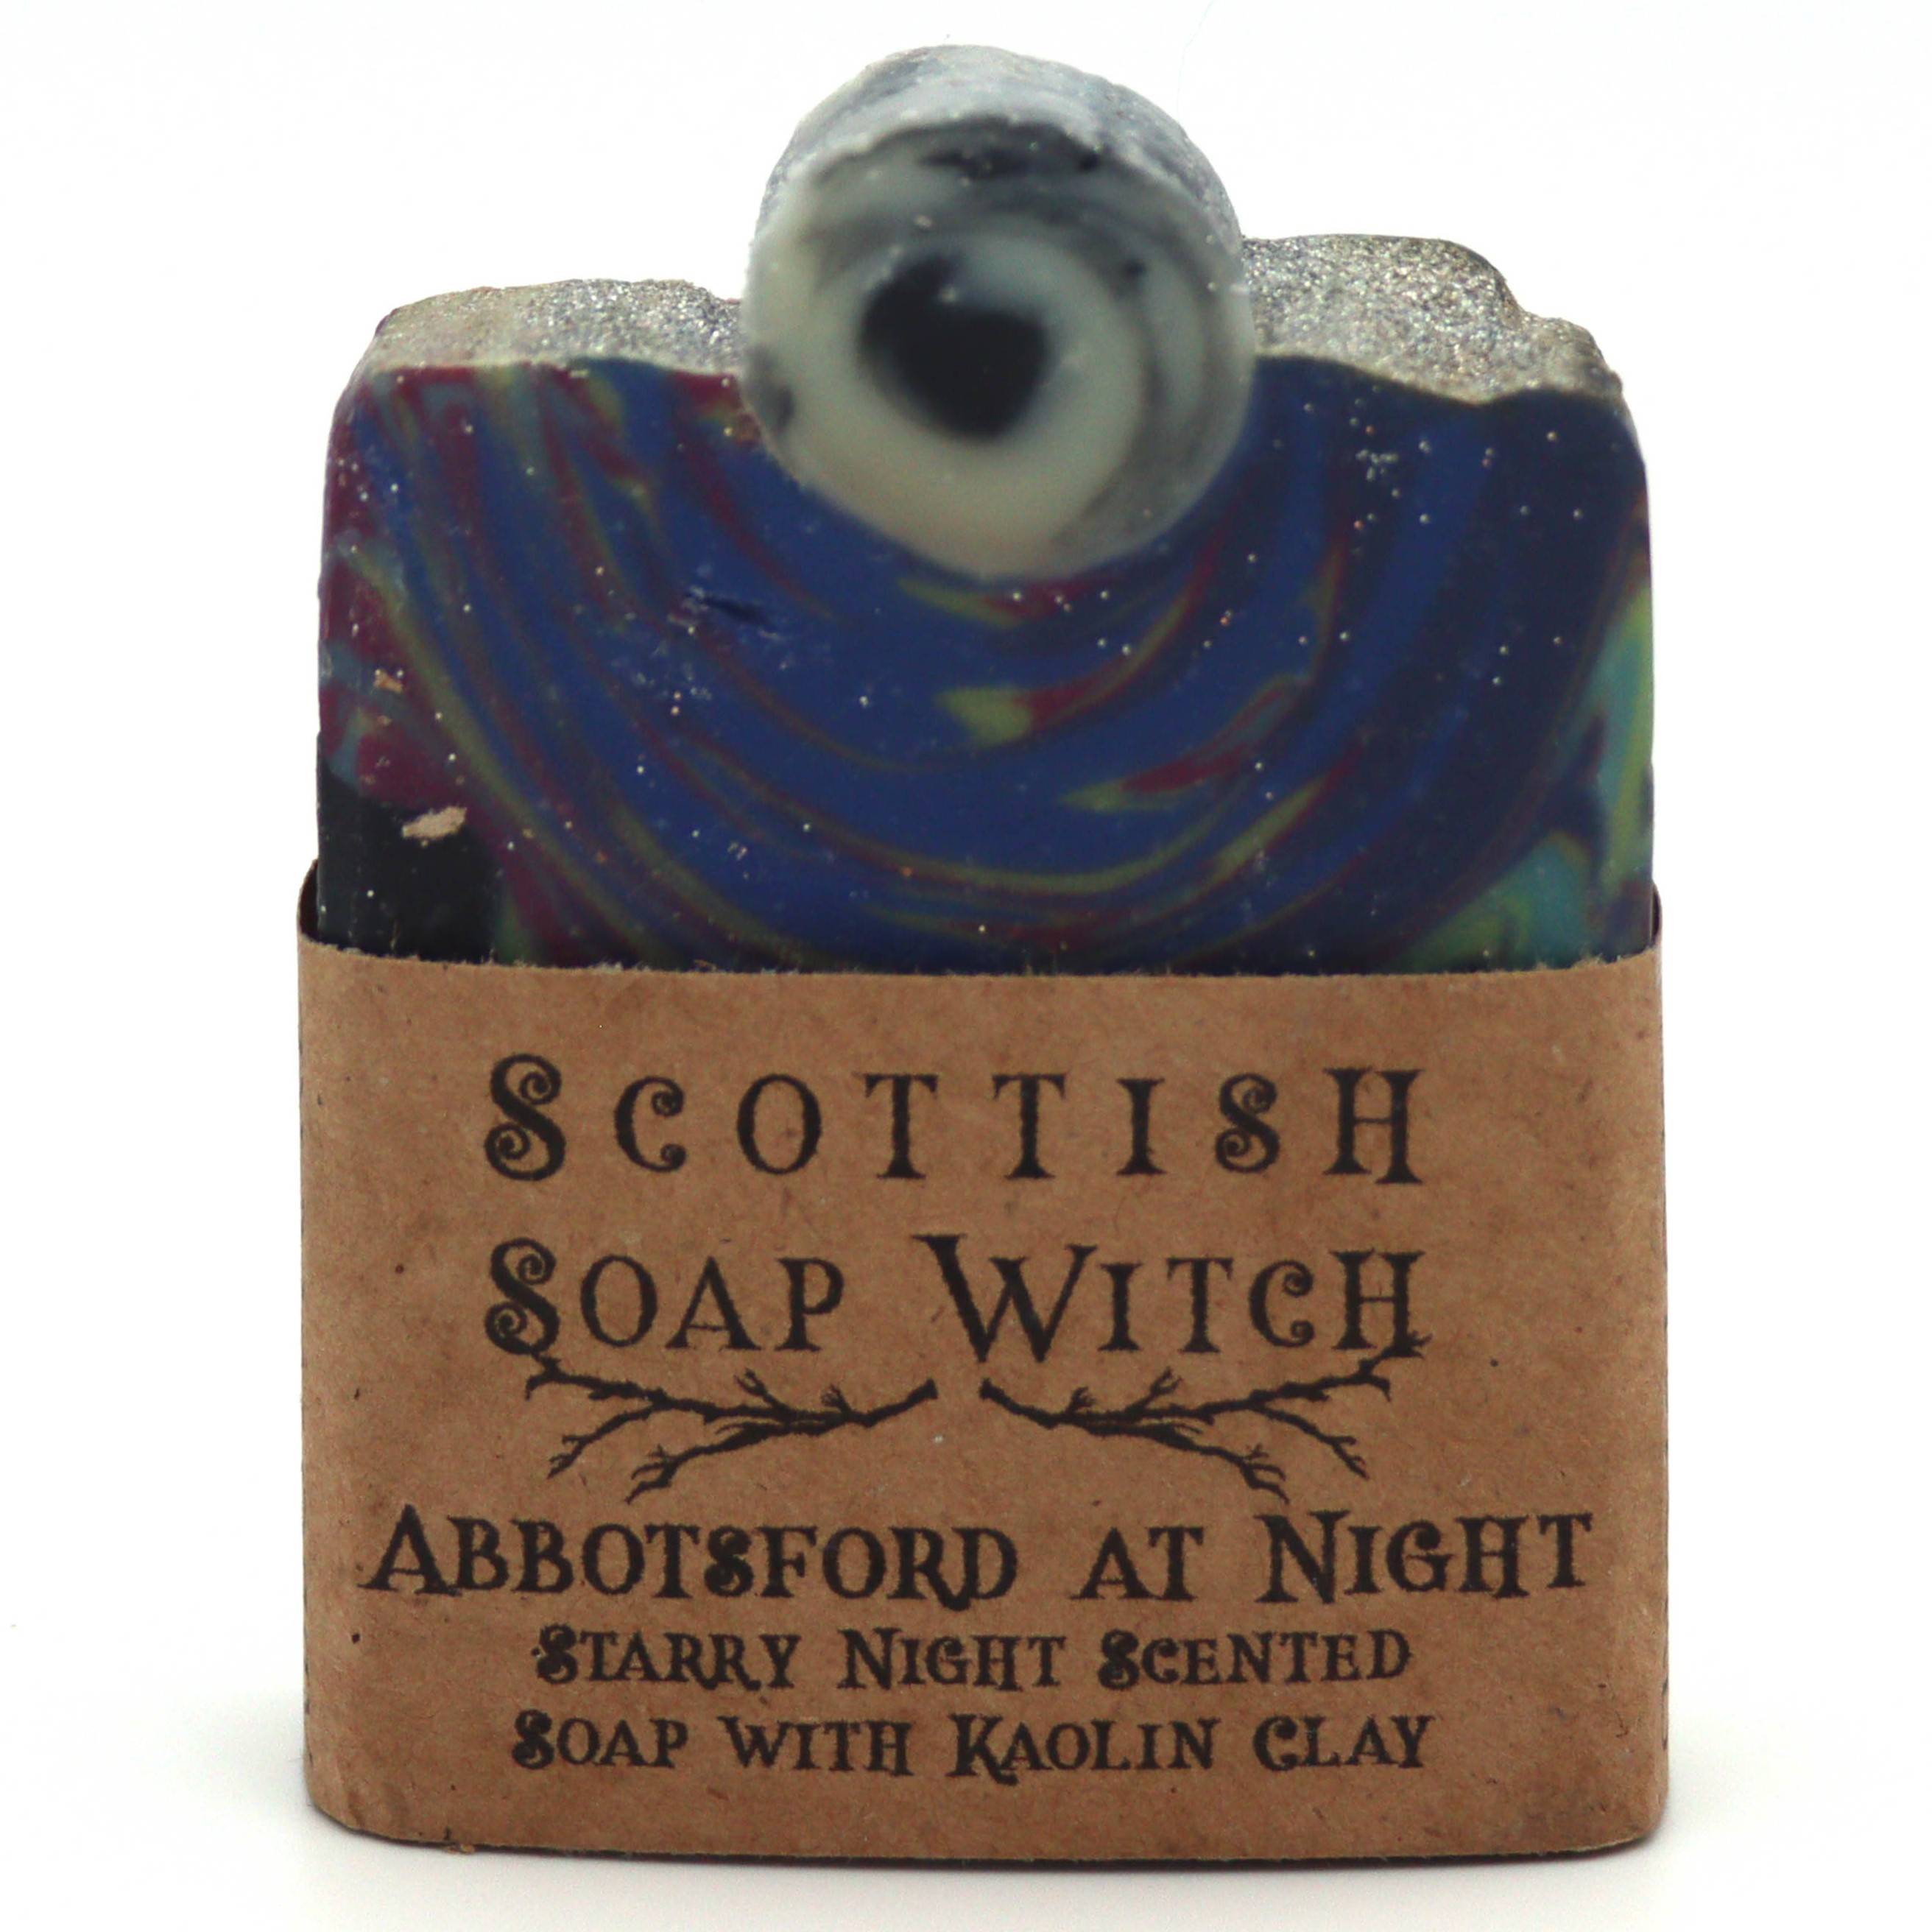 Abbotsford at Night Soap